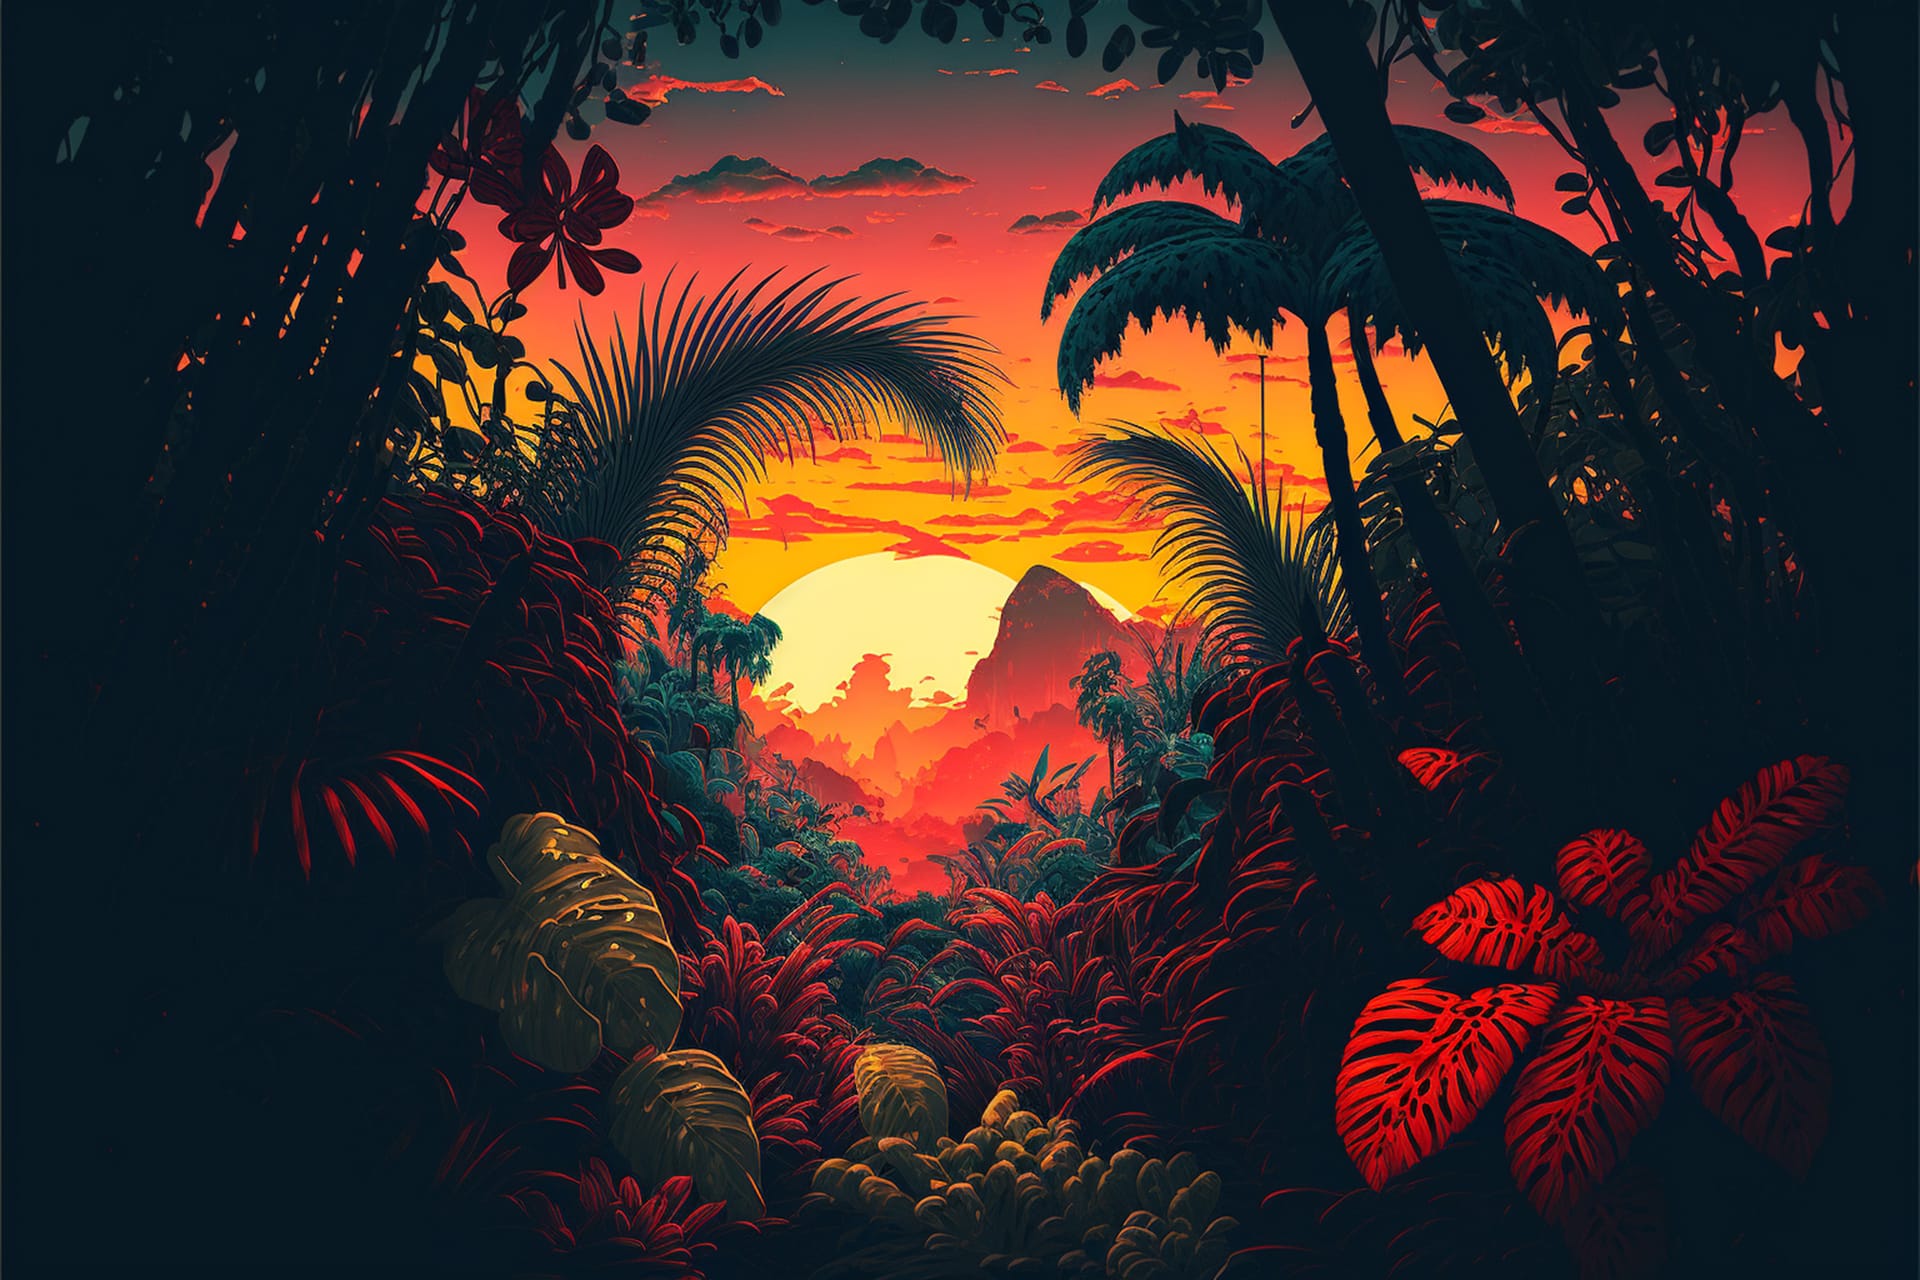 Jungle with vibrant sunset sunrise backdrop image